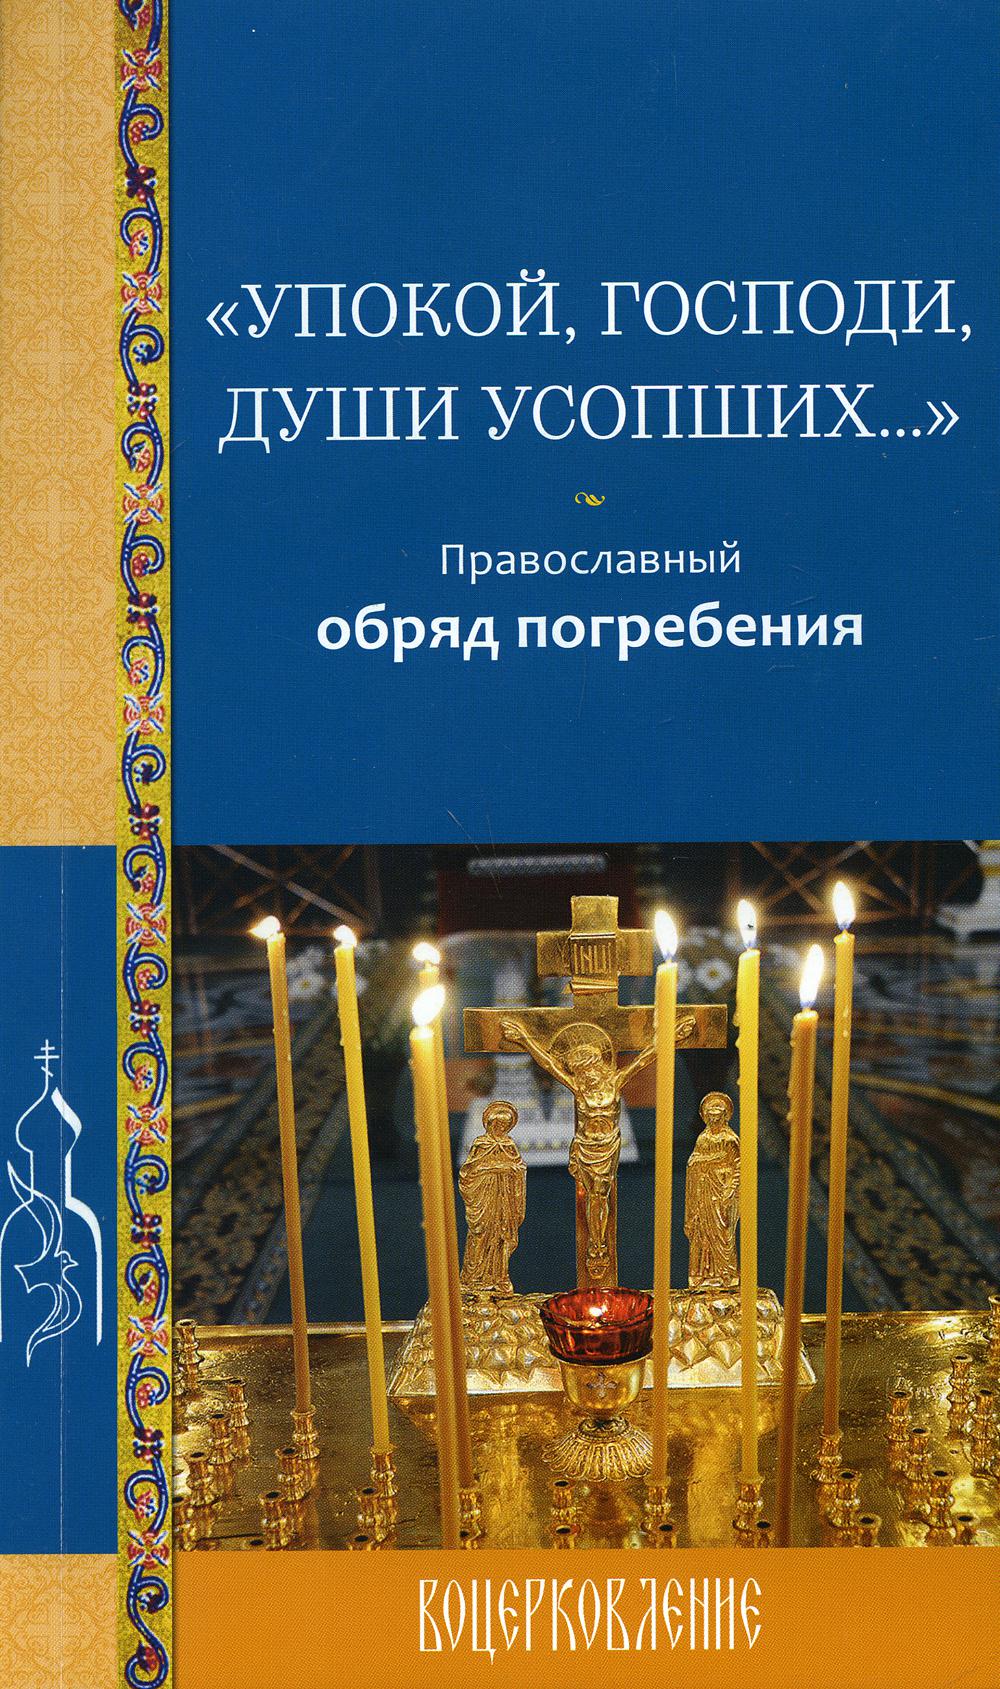 Упокой, Господи, души усопших…: православный обряд погребения